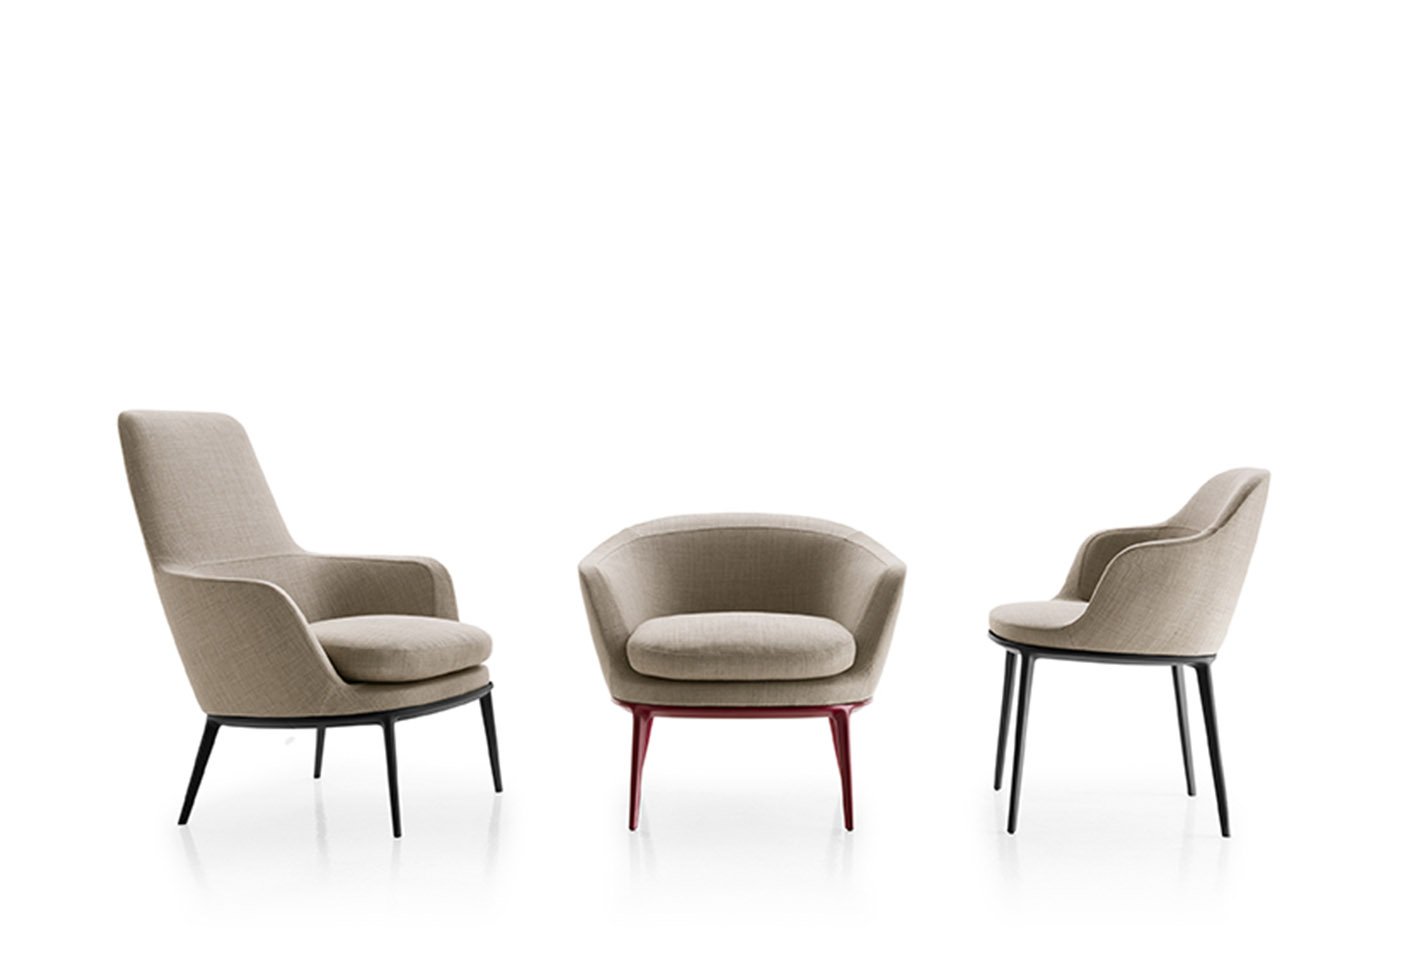 The Caratos chair collection designed by Antonio Citterio for Maxalto. Photo c/o Maxalto. 